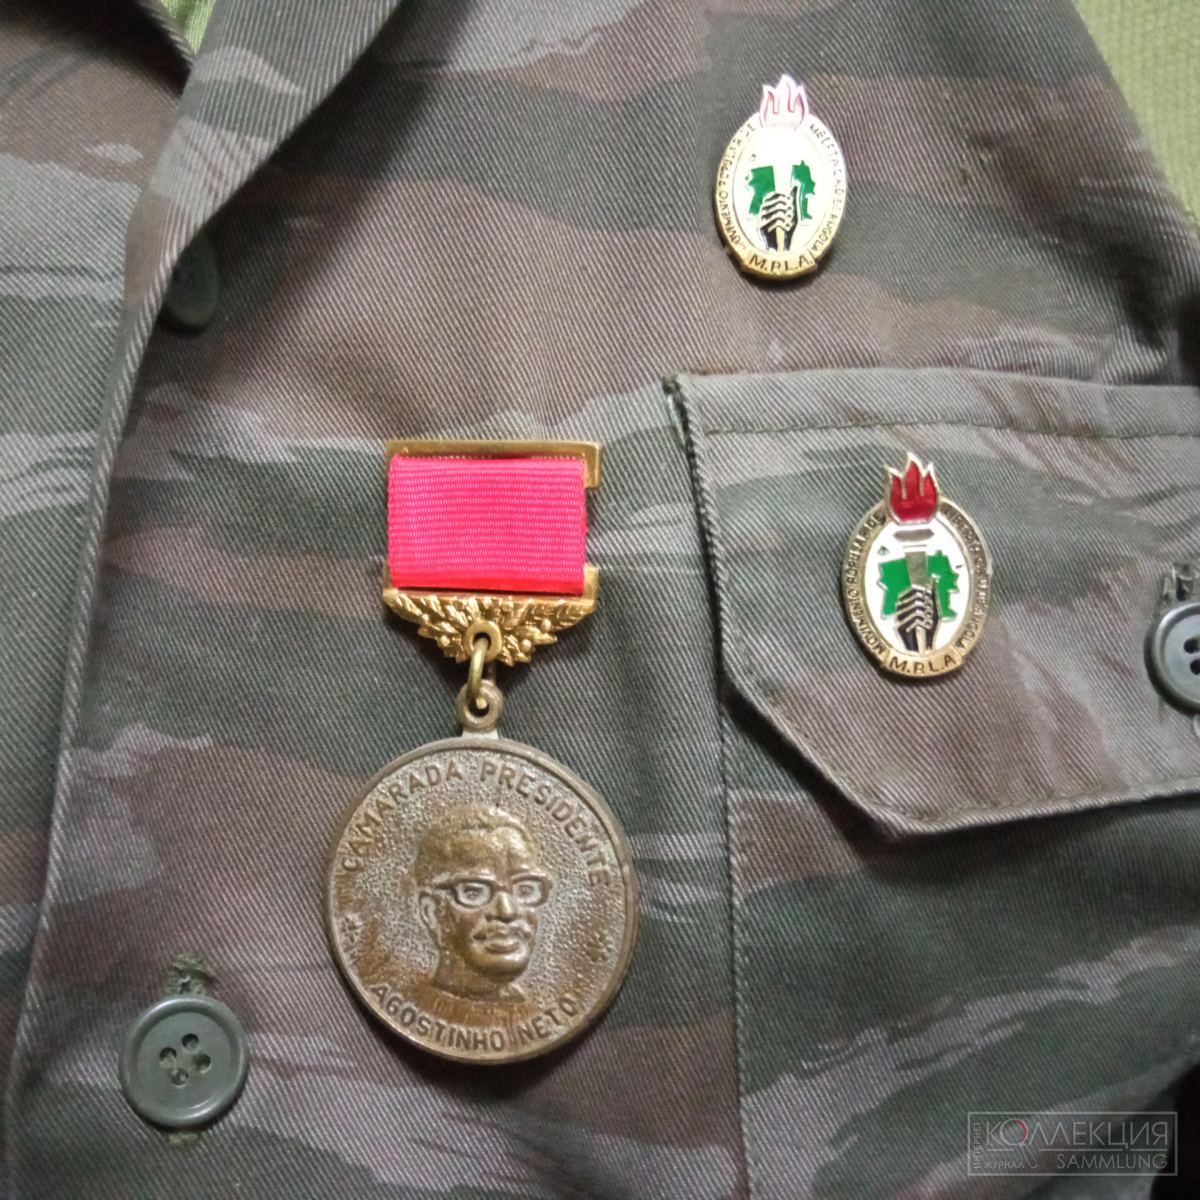 Медаль, посвящённая президенту Агостиньо Нето и значки МПЛА - Партии труда. Музей Союза ветеранов Анголы